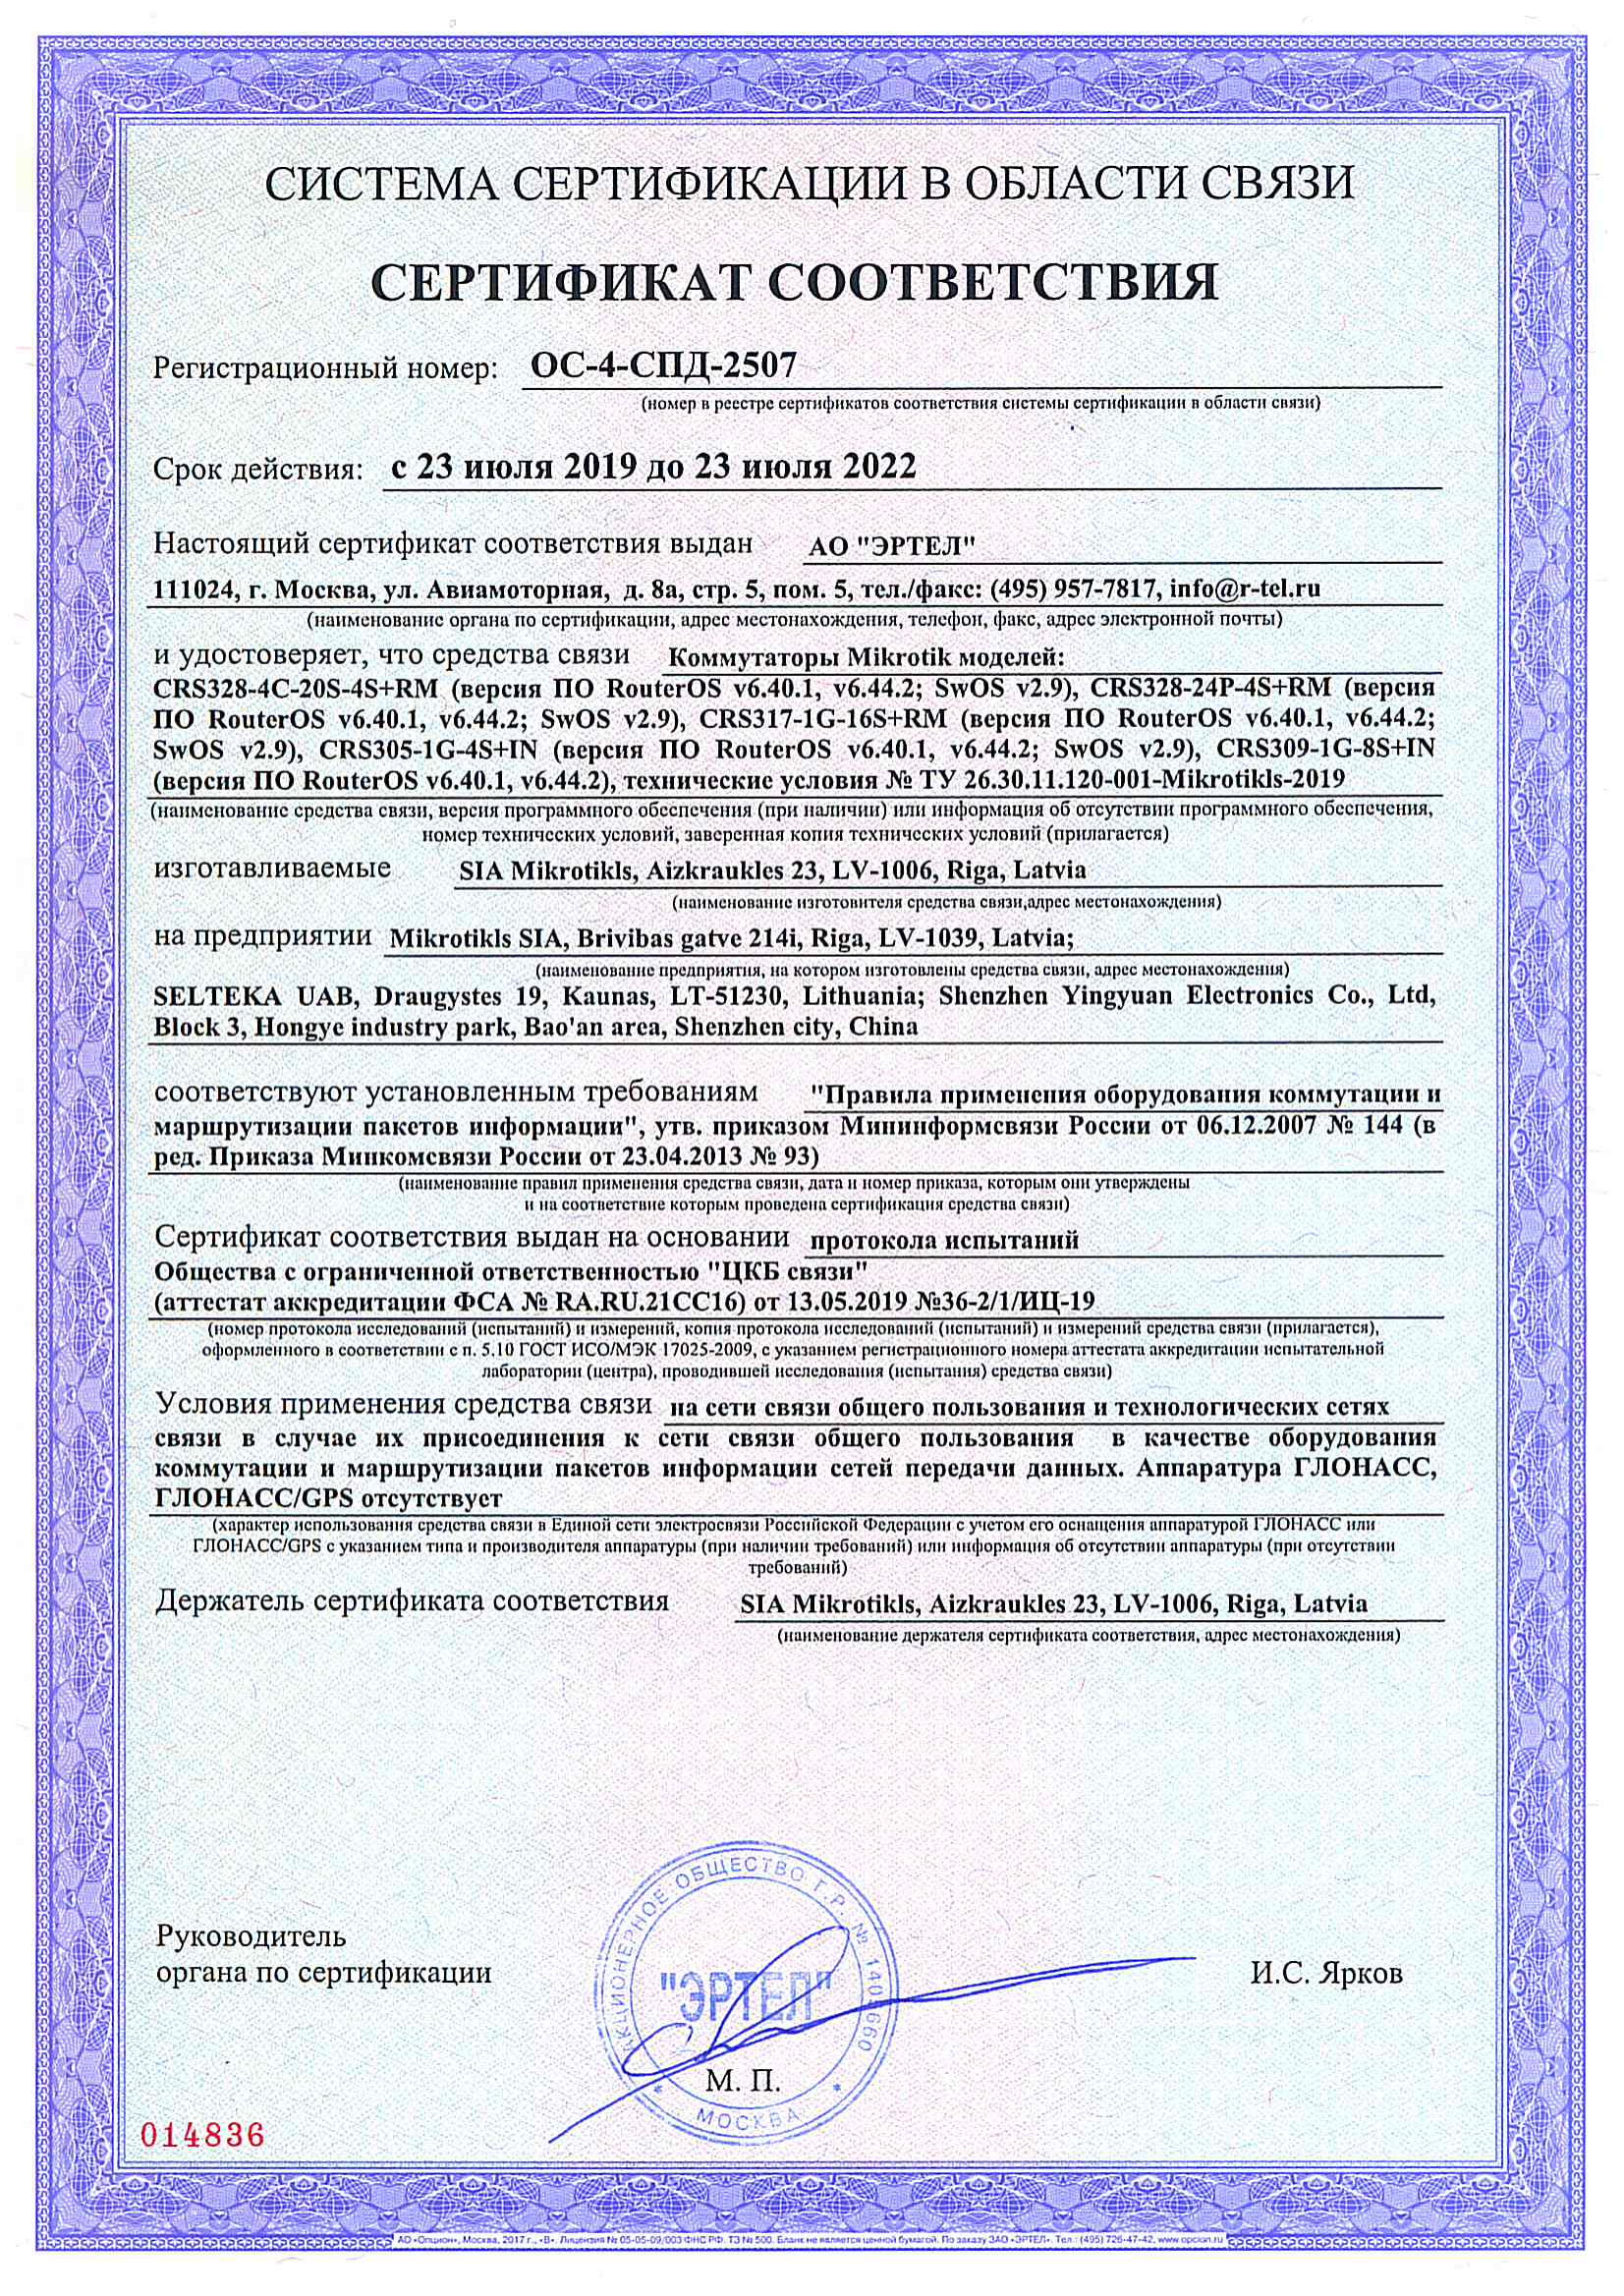 Сертификат соответствия в области связи ОС-4-СПД-2507